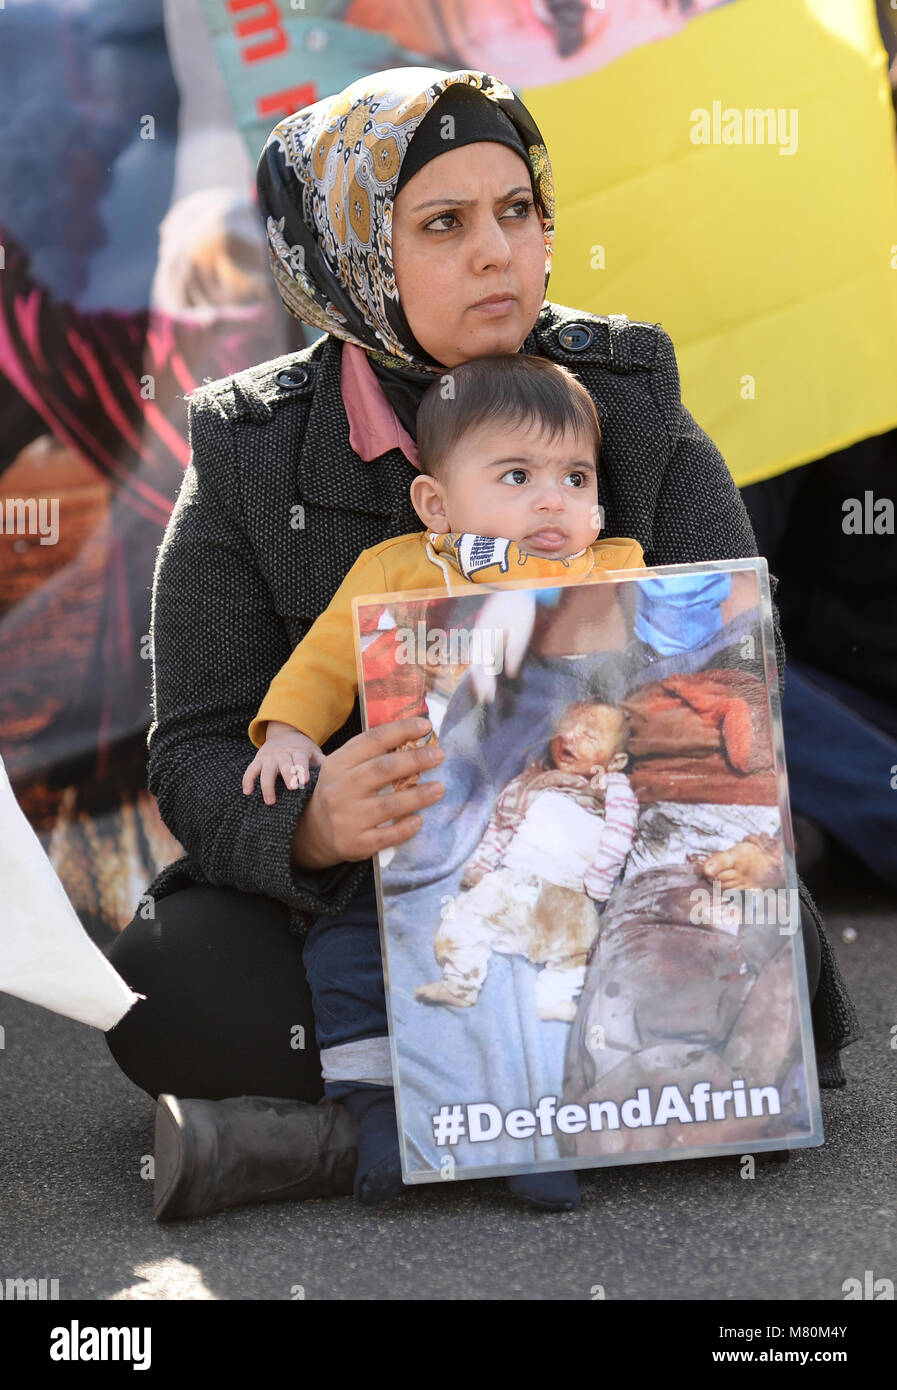 Die Erlaubnis erteilt die Demonstranten blockieren den Verkehr in Parliament Square, London, als Protest gegen die Angriffe auf die kurdische Stadt Afrin im Norden Syriens. Stockfoto